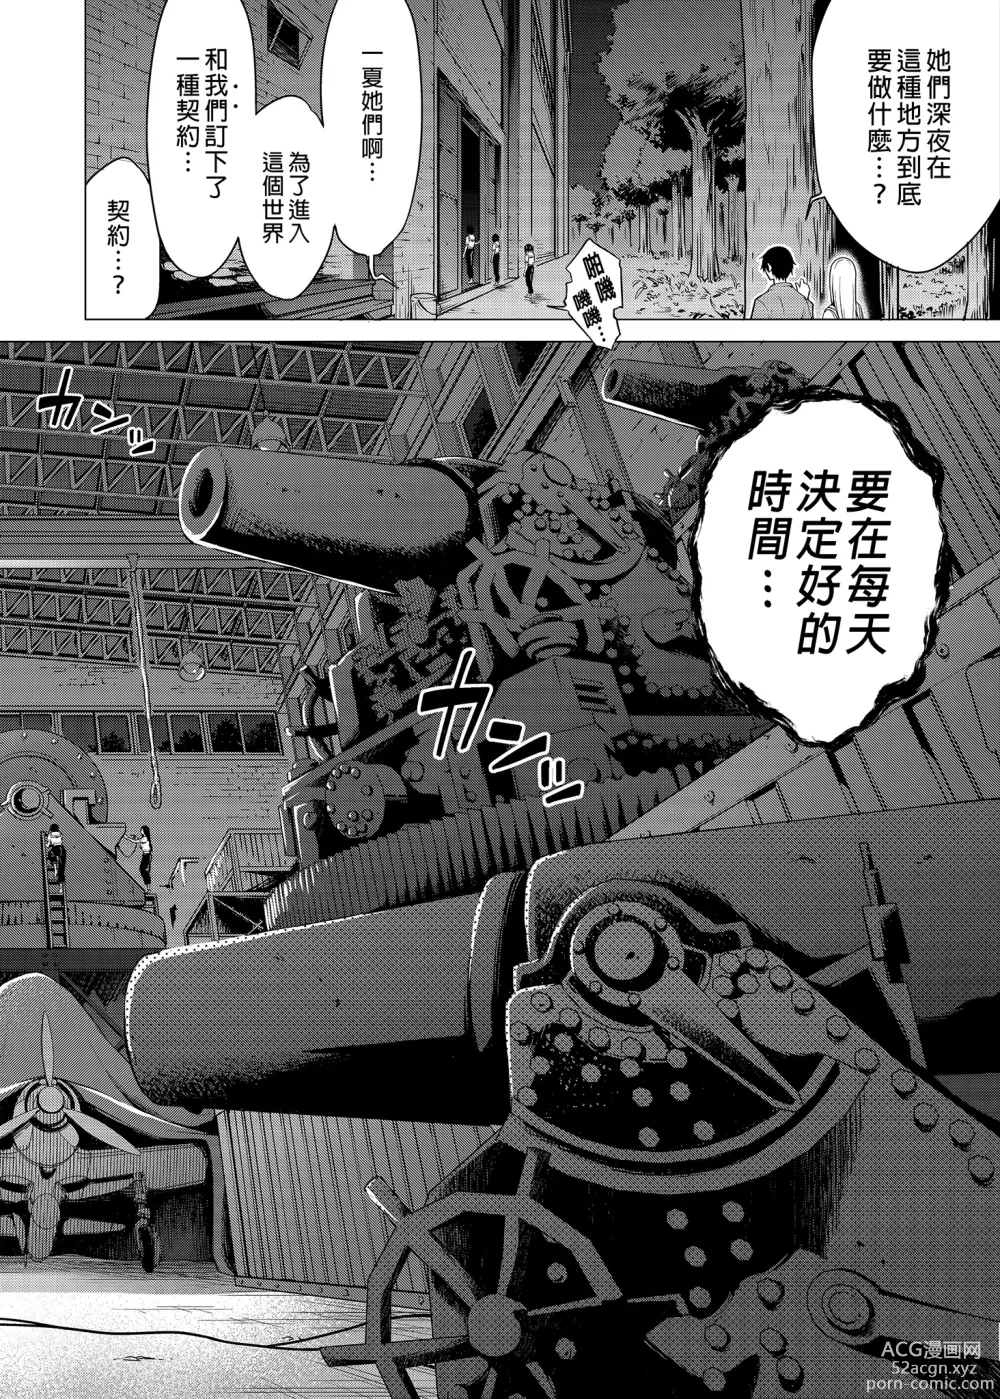 Page 51 of manga nanaka no rakuen5